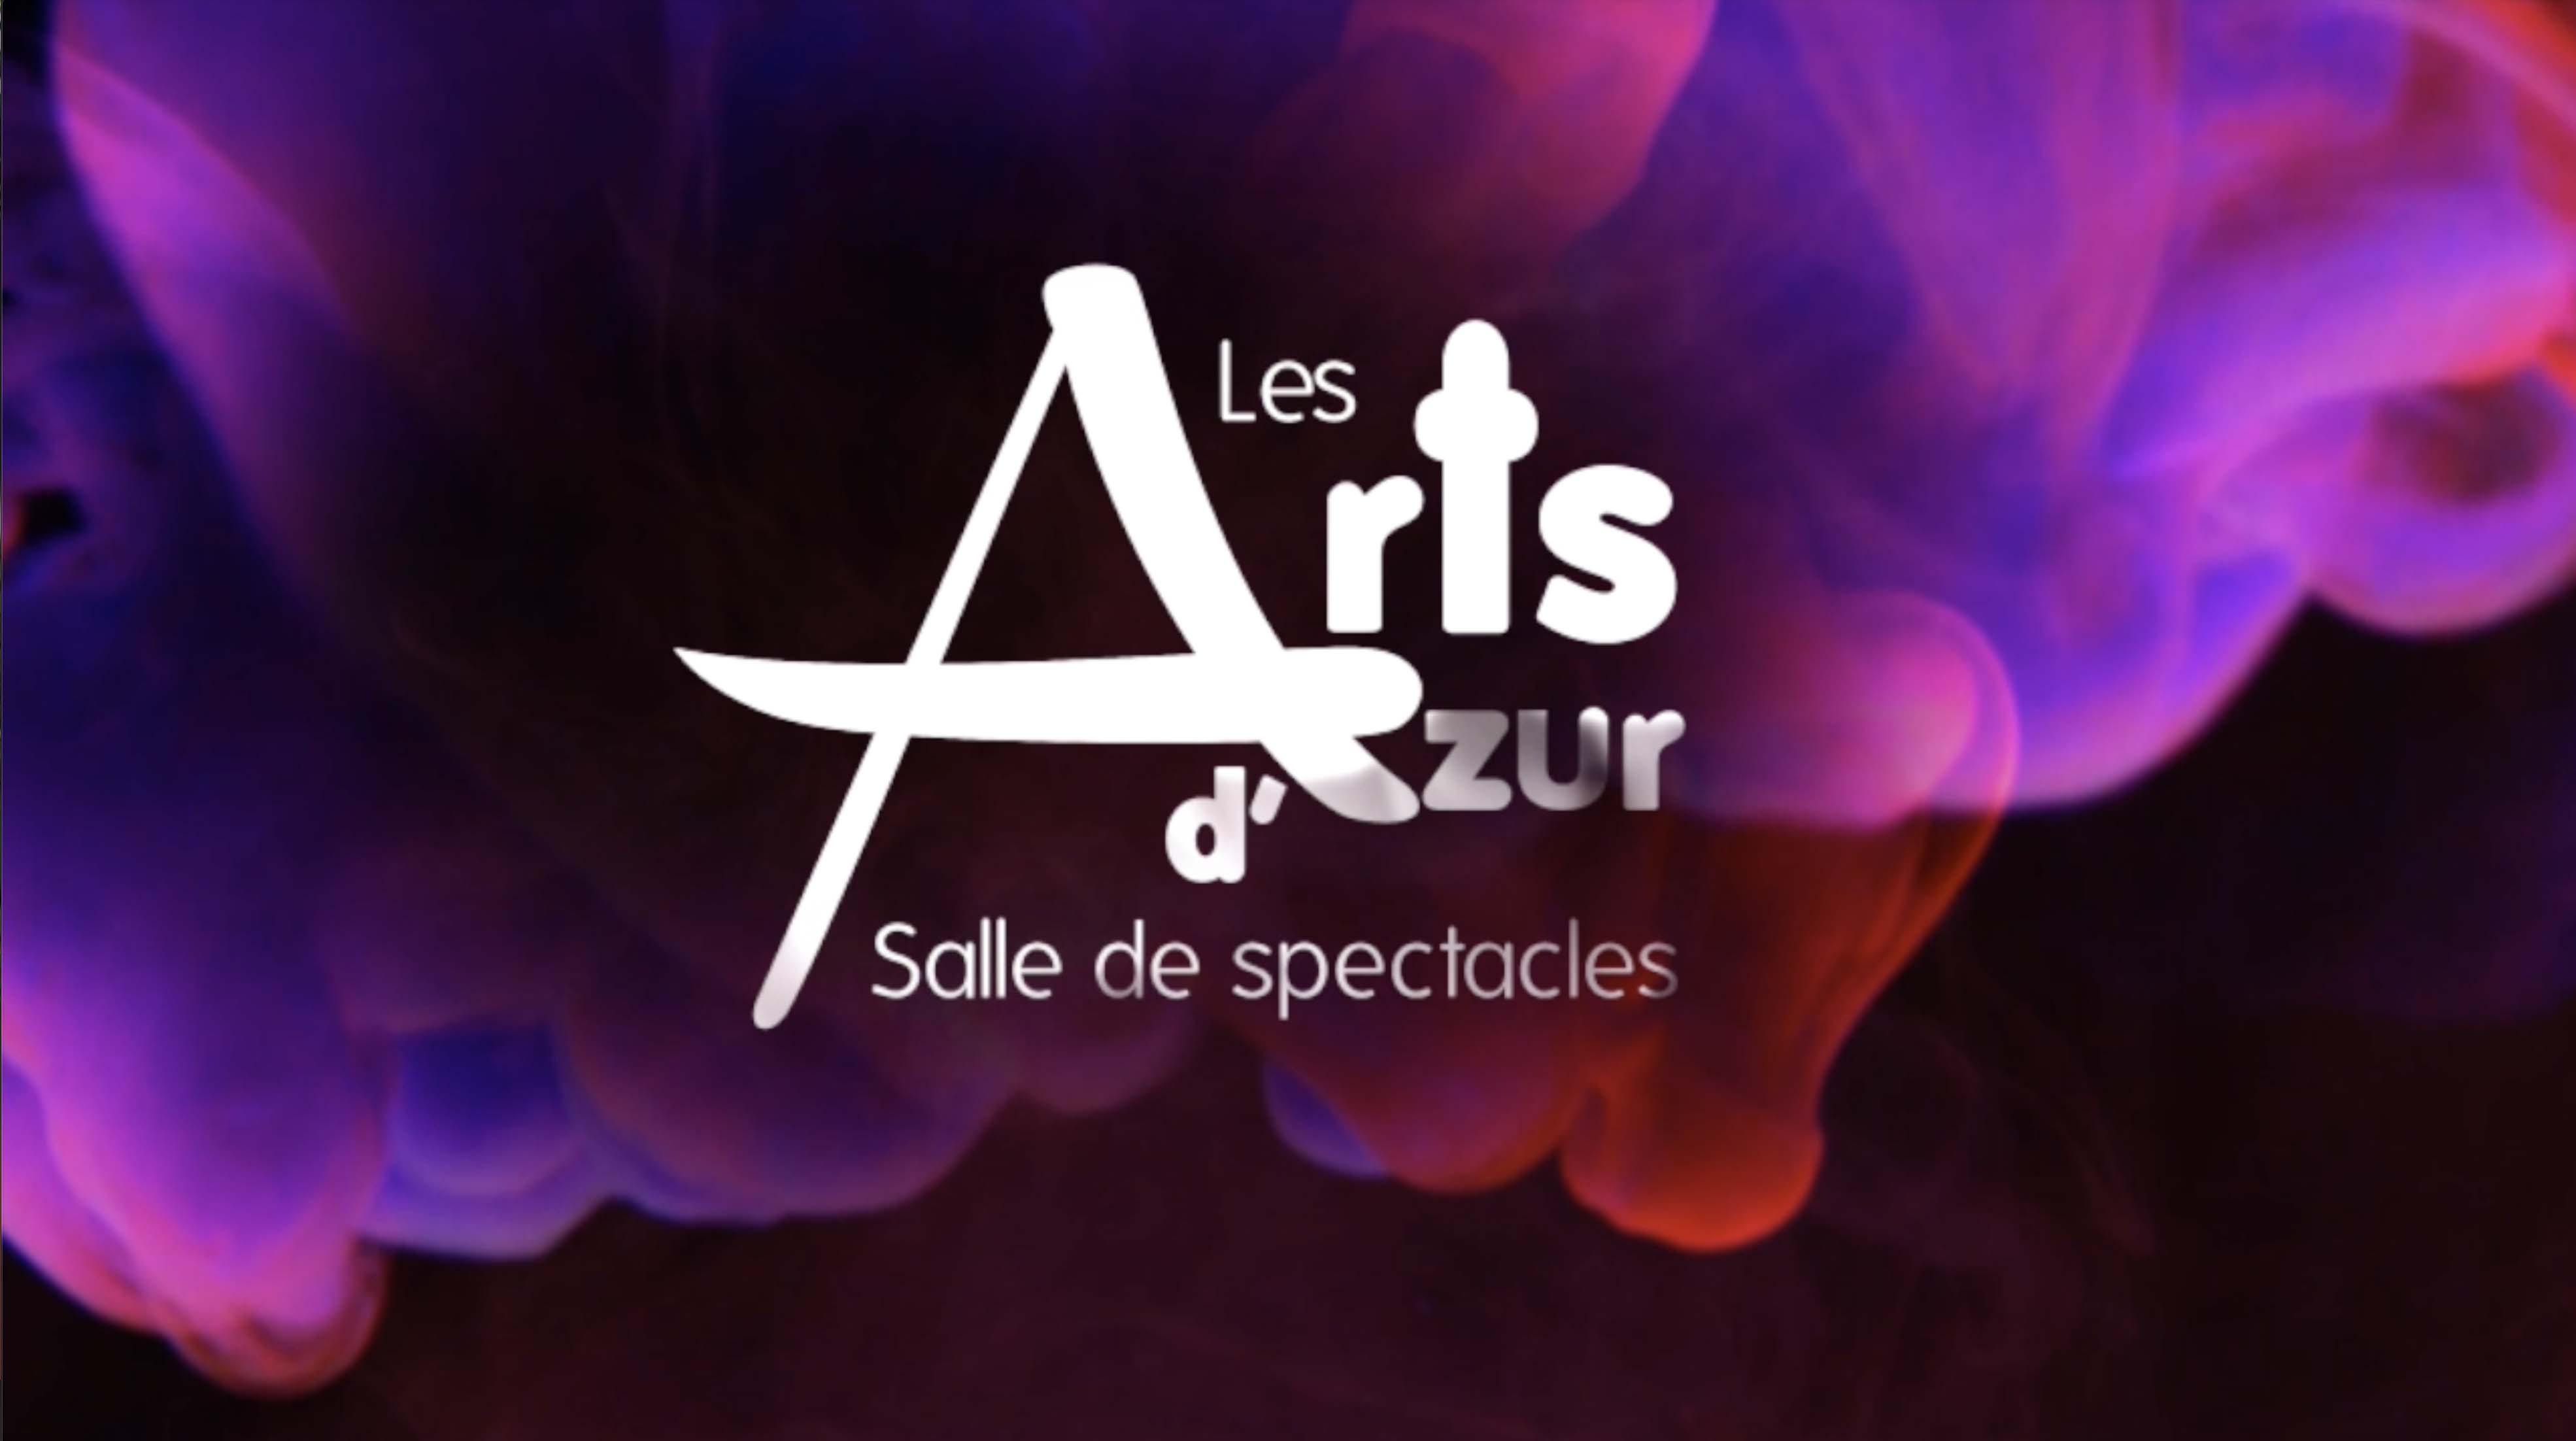 Billets Salle des Arts D'Azur